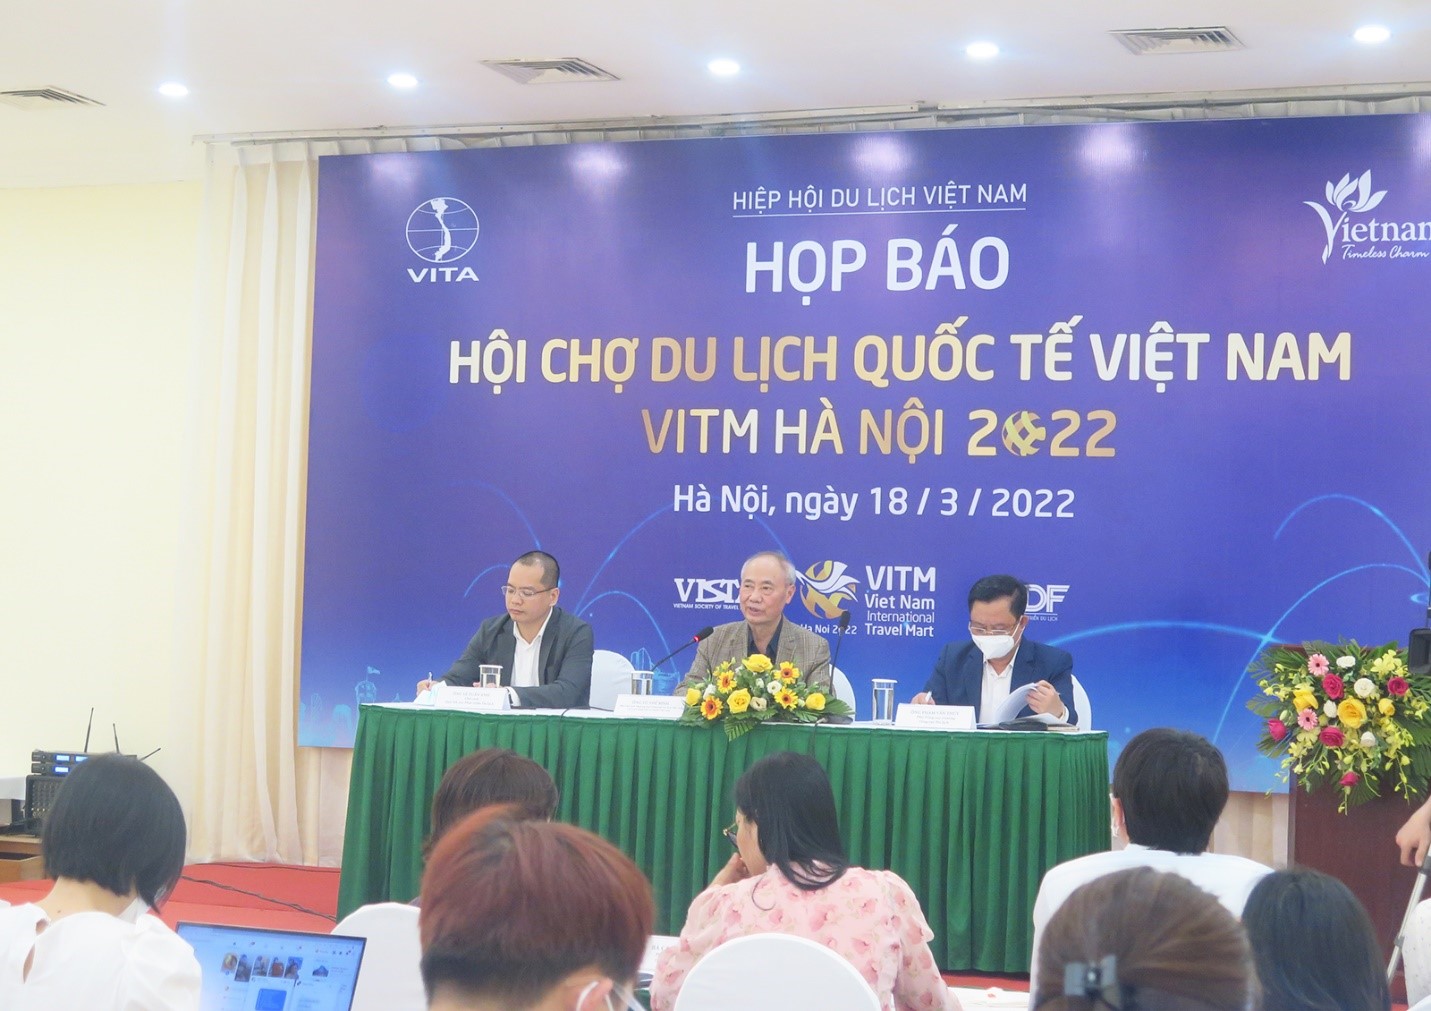 Hội chợ du lịch quốc tế VITM Hà Nội 2022 sẽ diễn ra từ 31/3 - 3/4